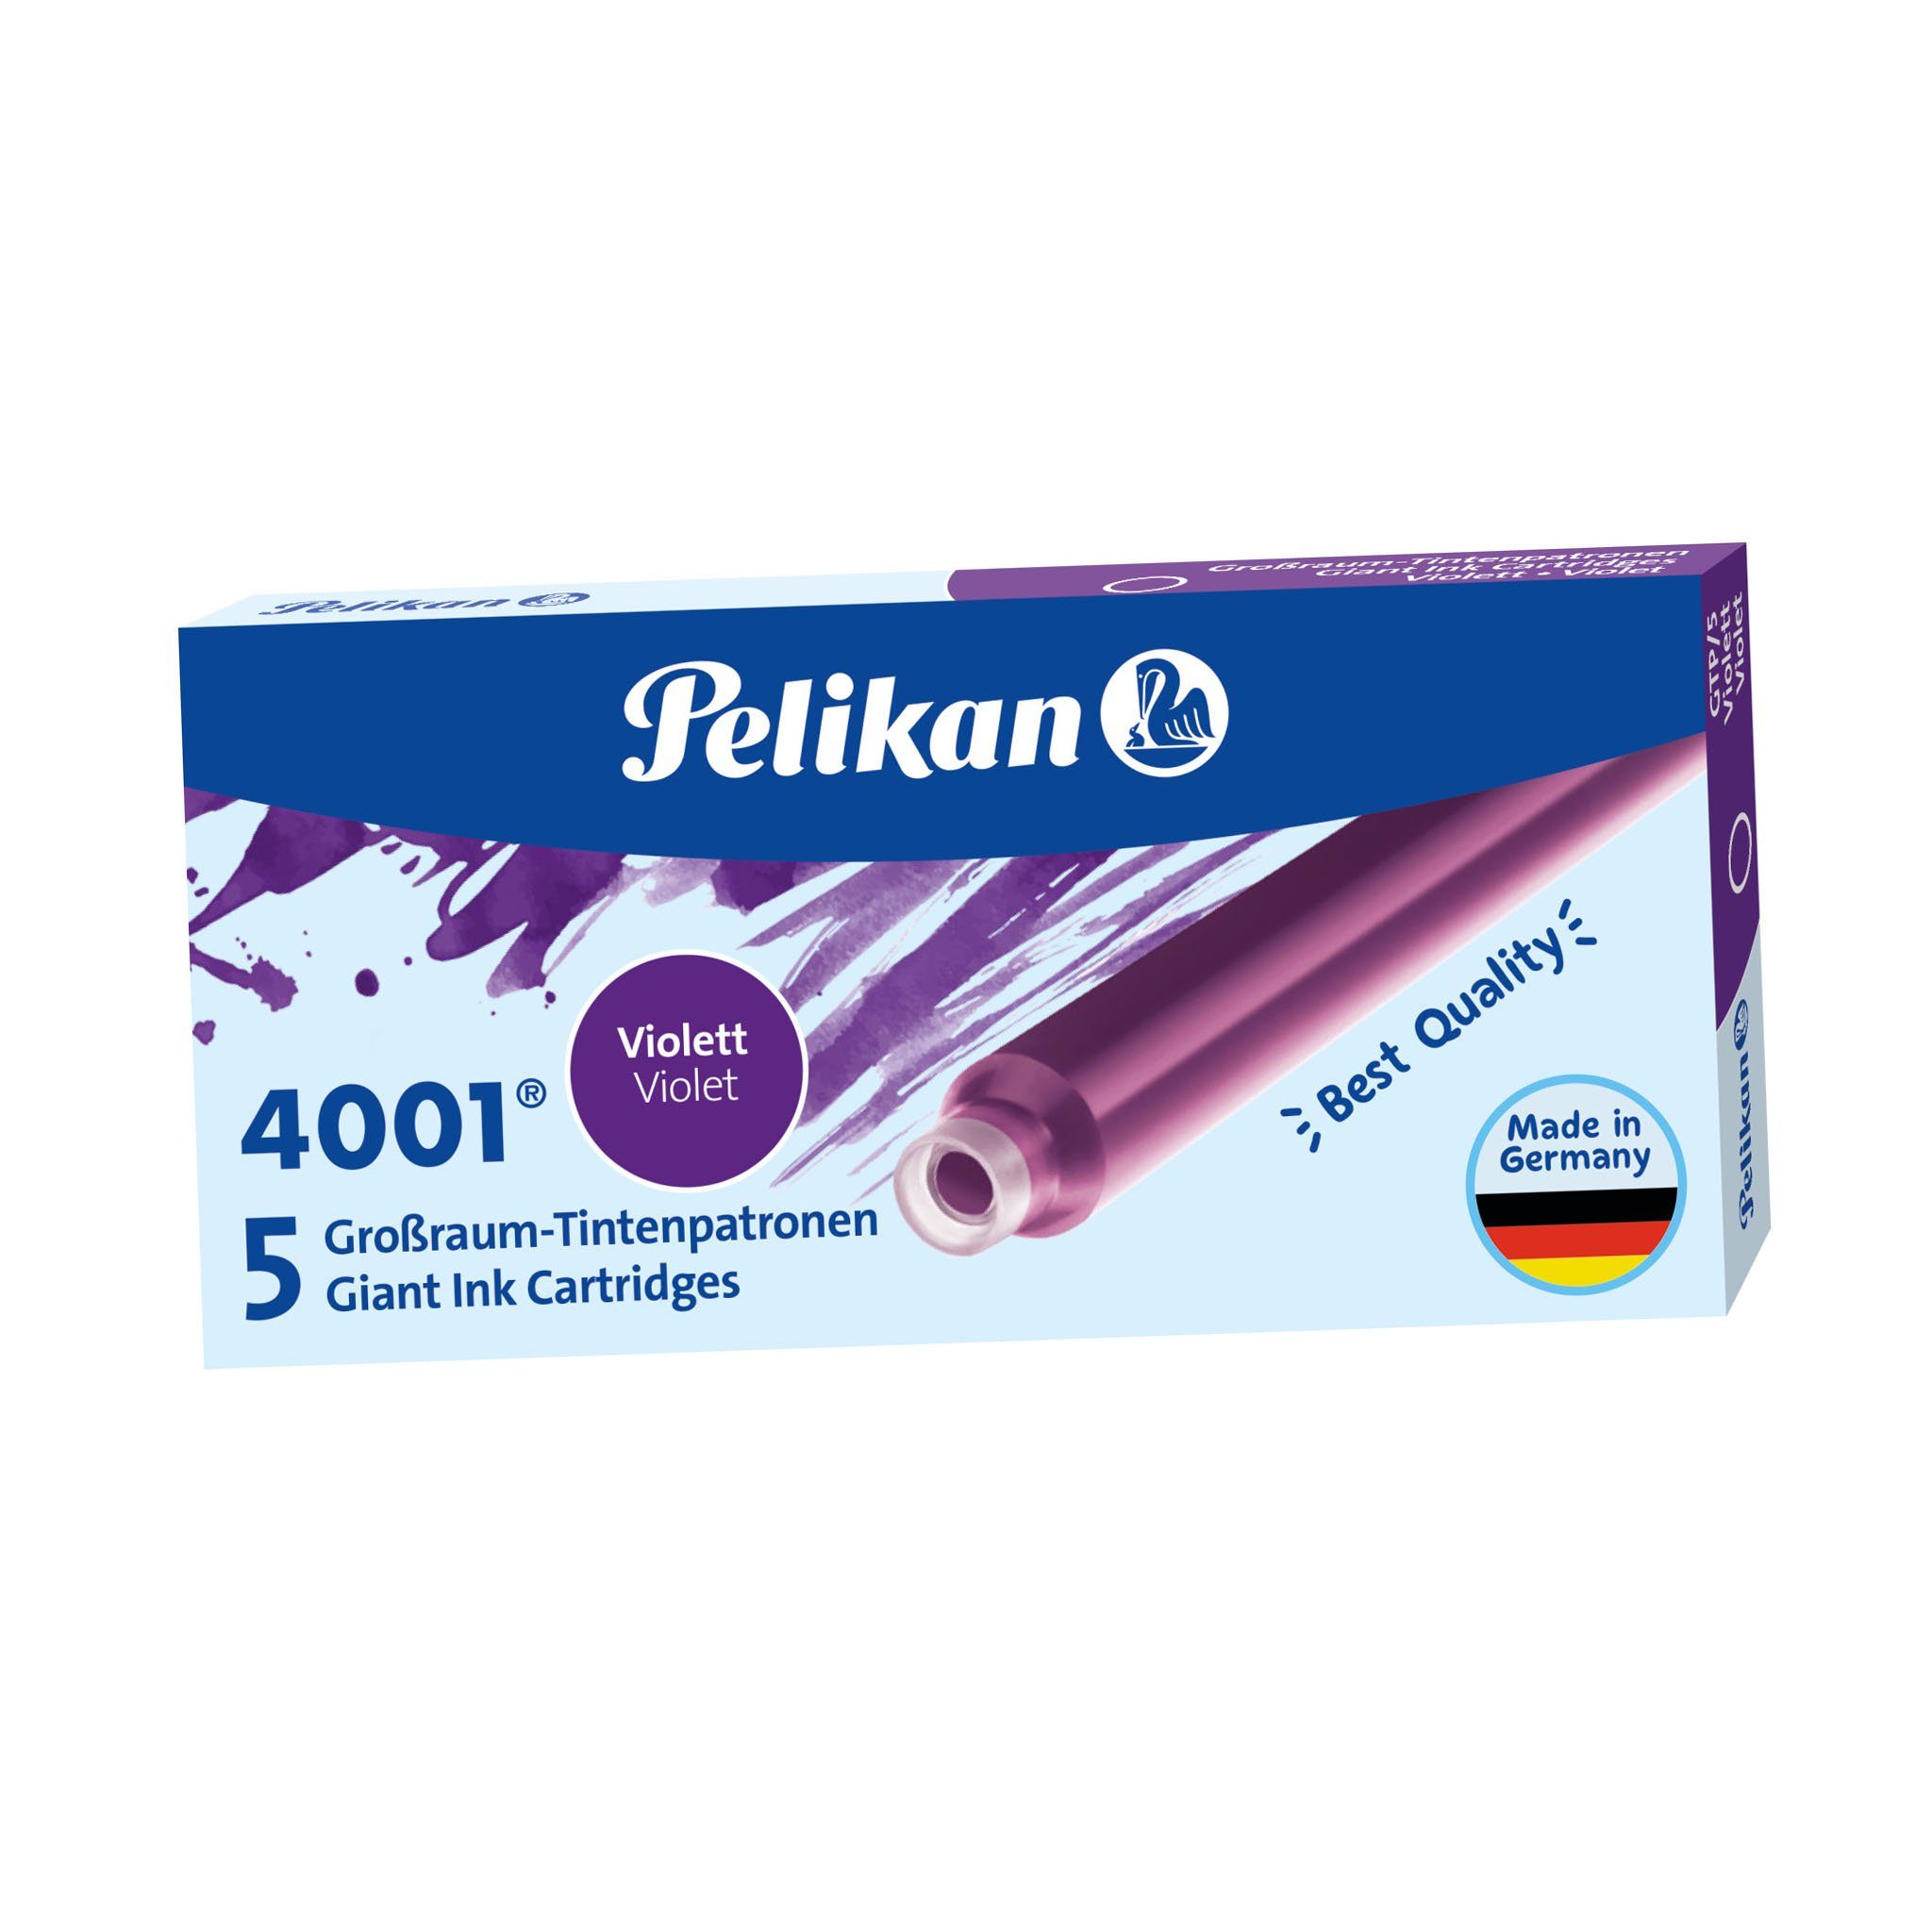 Pelikan Füllfederhalter Pelikan Großraum-Tintenpatronen violett GTP/5, 4001